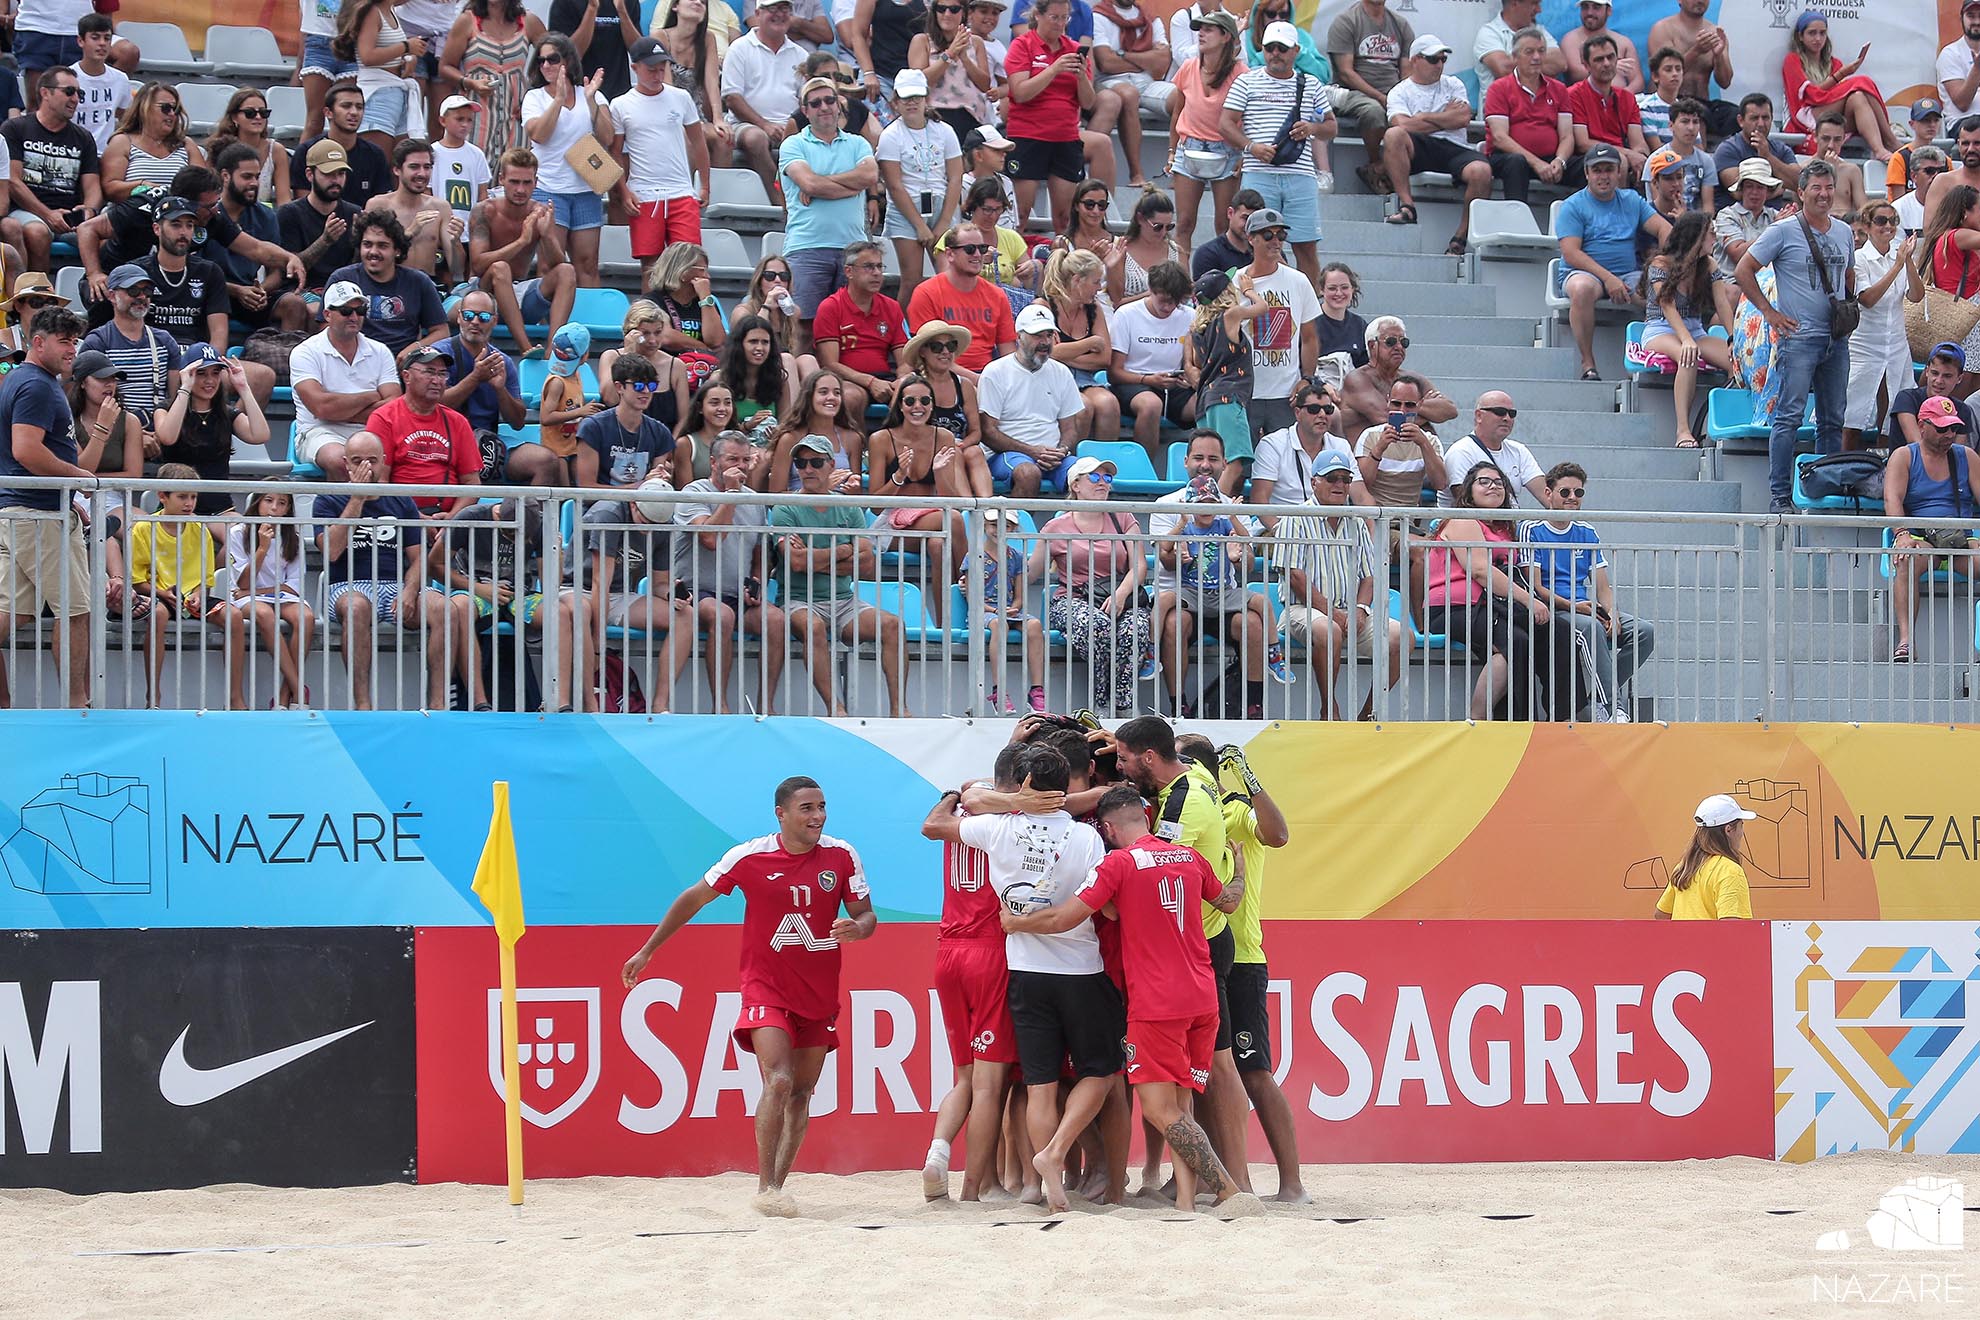 Sótão e Braga disputarão a final da Taça de Portugal em futebol de praia